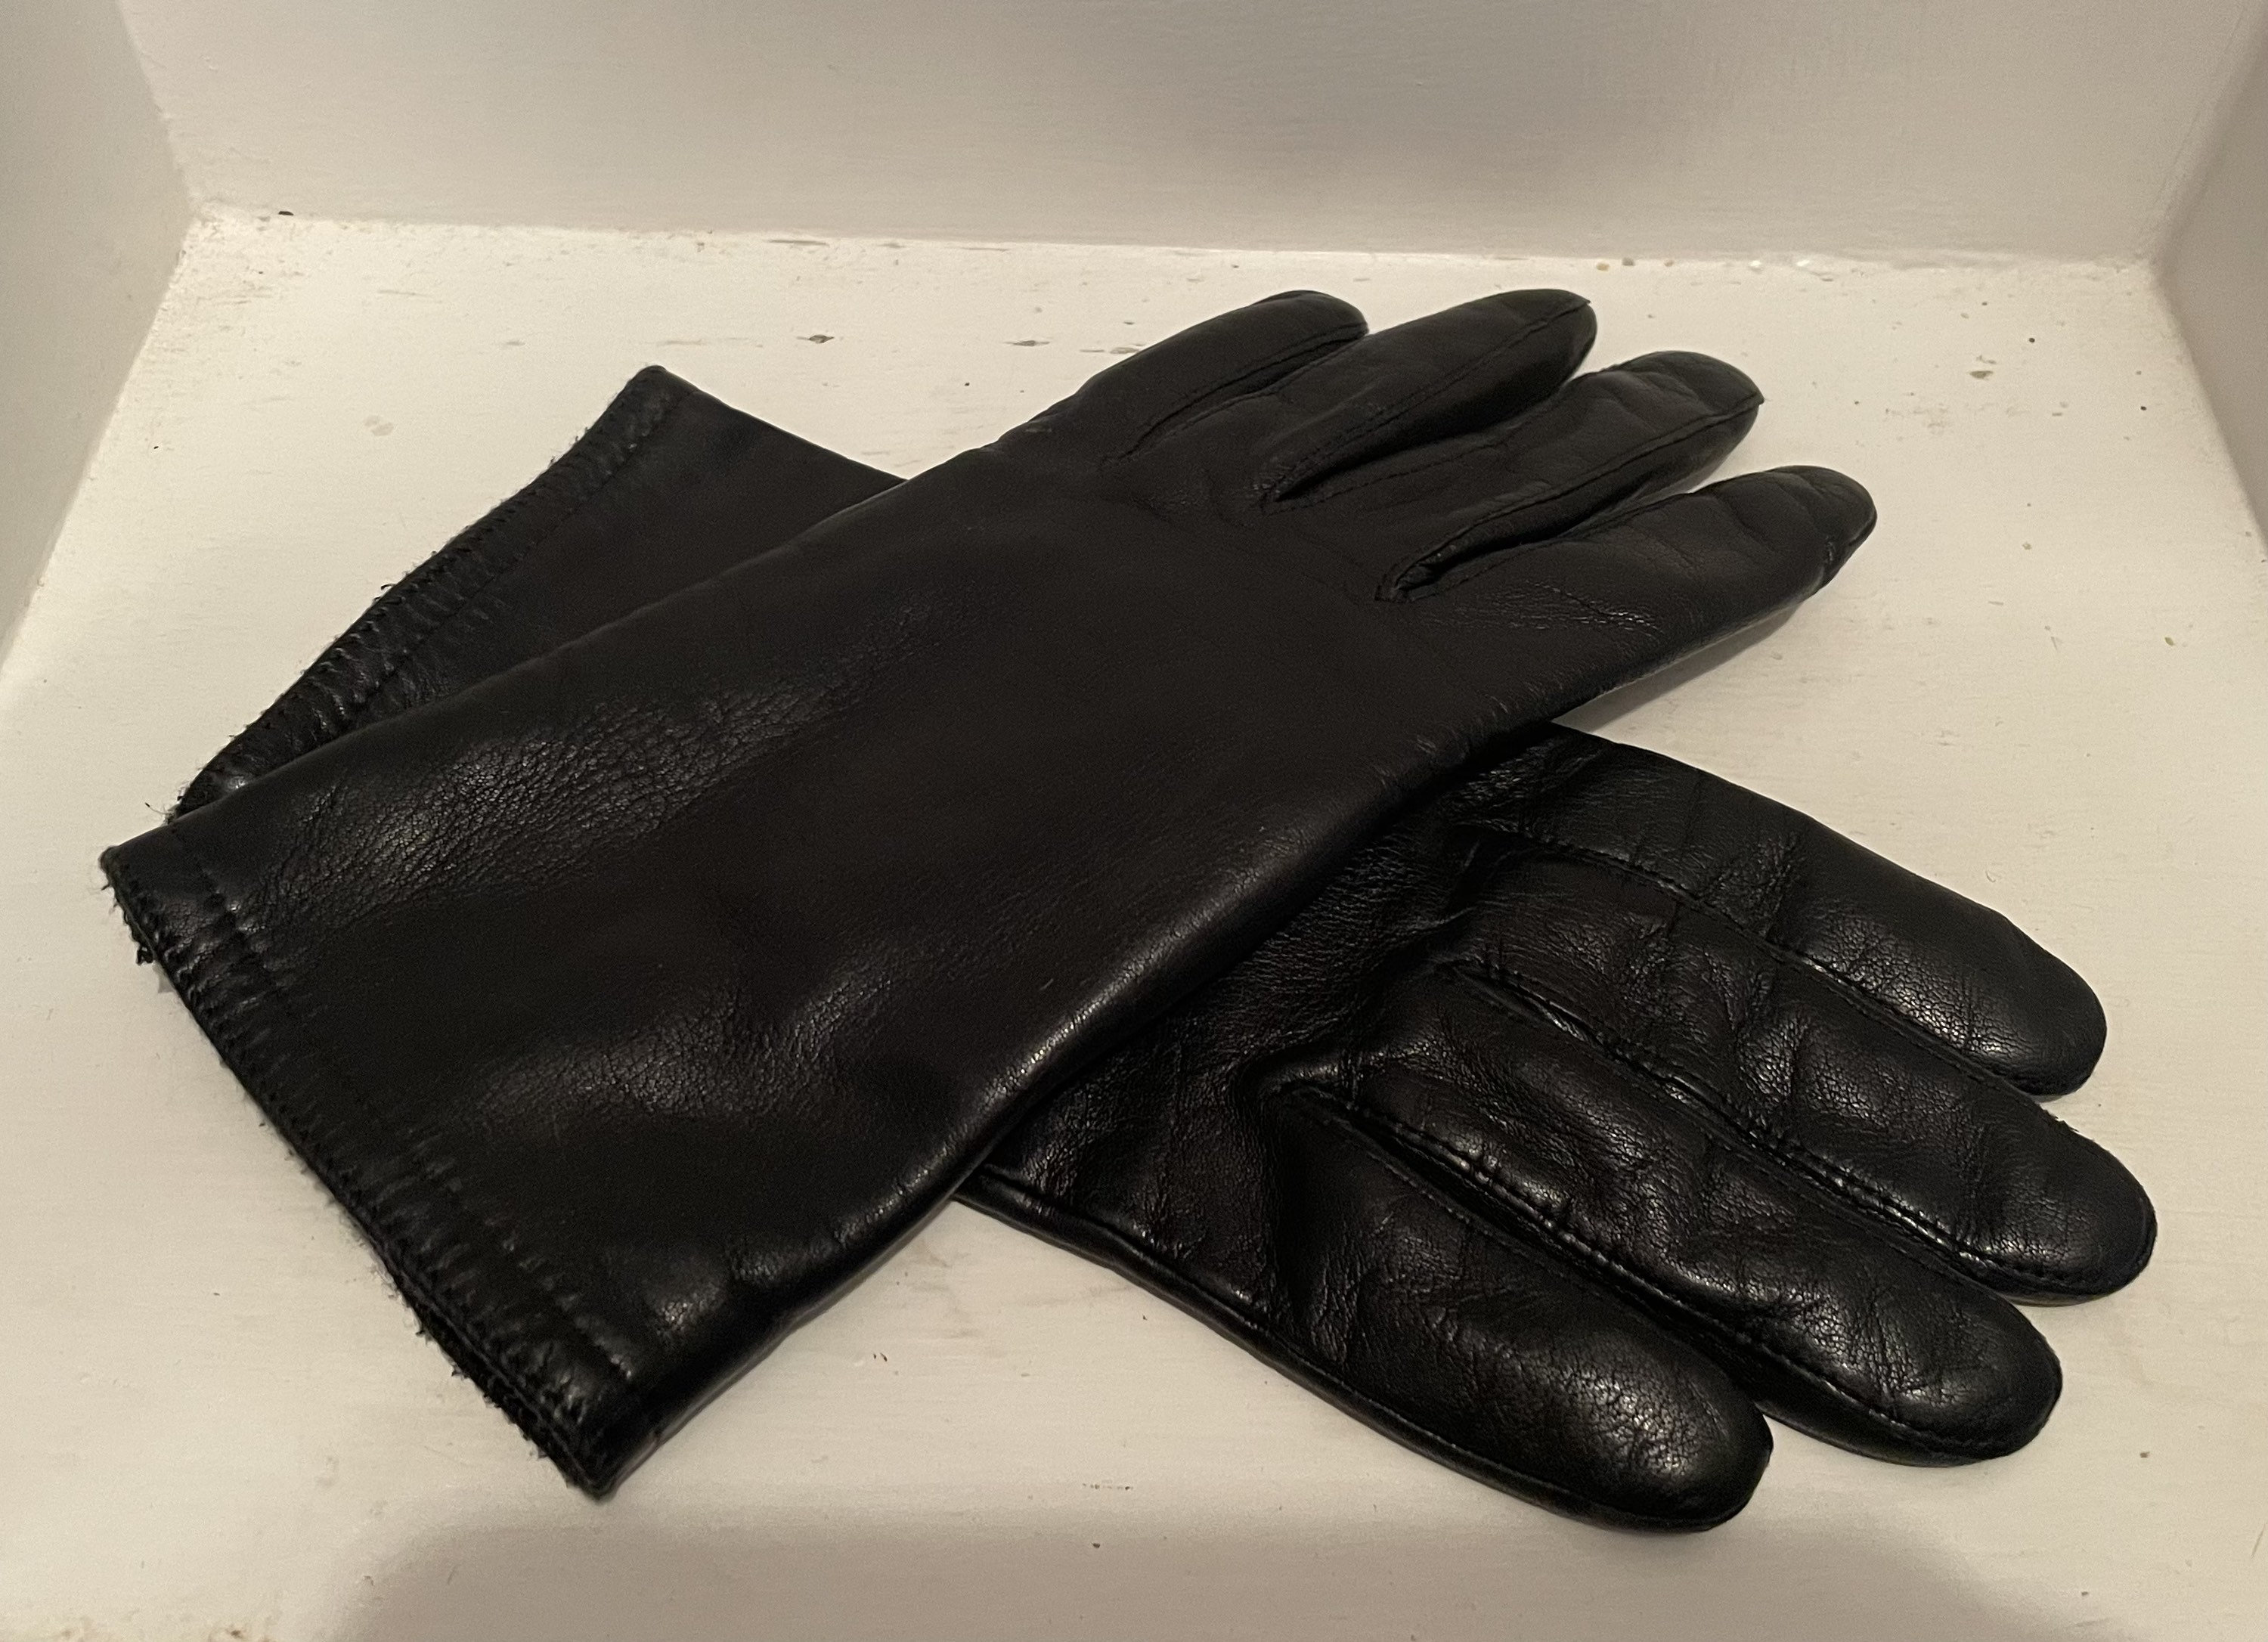 filter Nest cilinder 1970s Vintage Isotoner Genuine Leather Black Driving Gloves - Etsy Finland